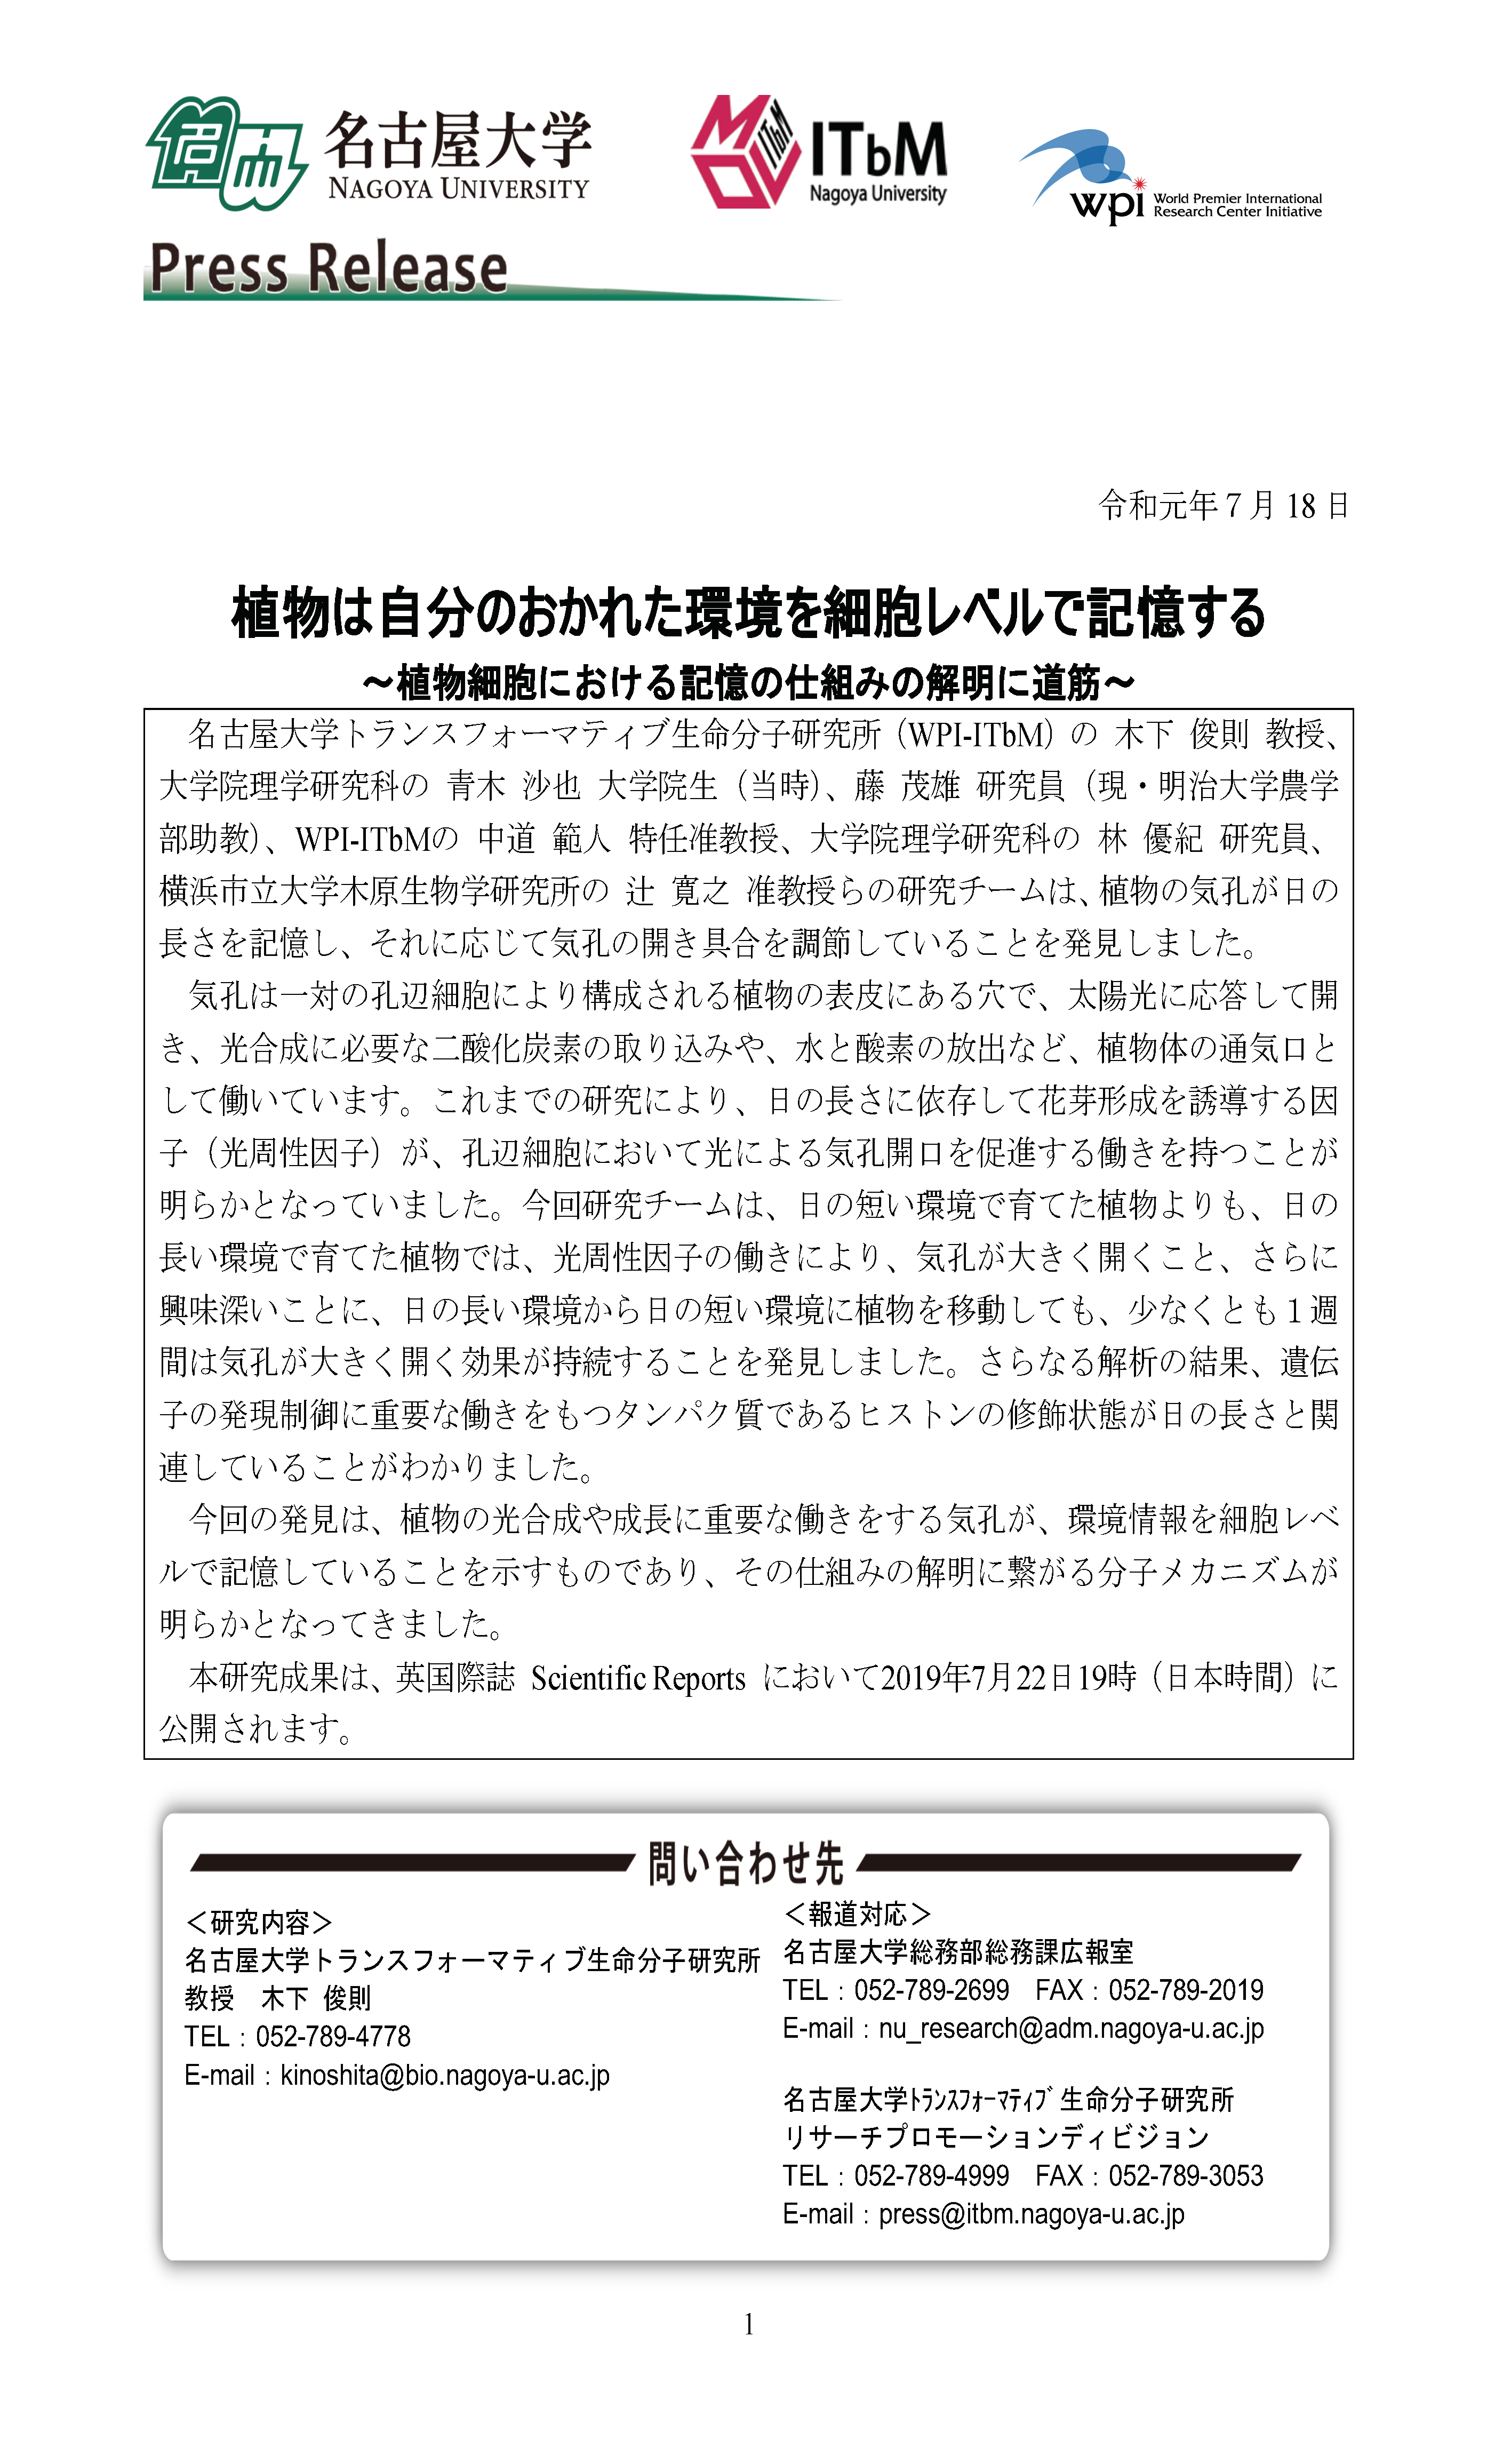 http://www.itbm.nagoya-u.ac.jp/ja_backup/research/20190722Kinoshita_Scientific%20Reports.png